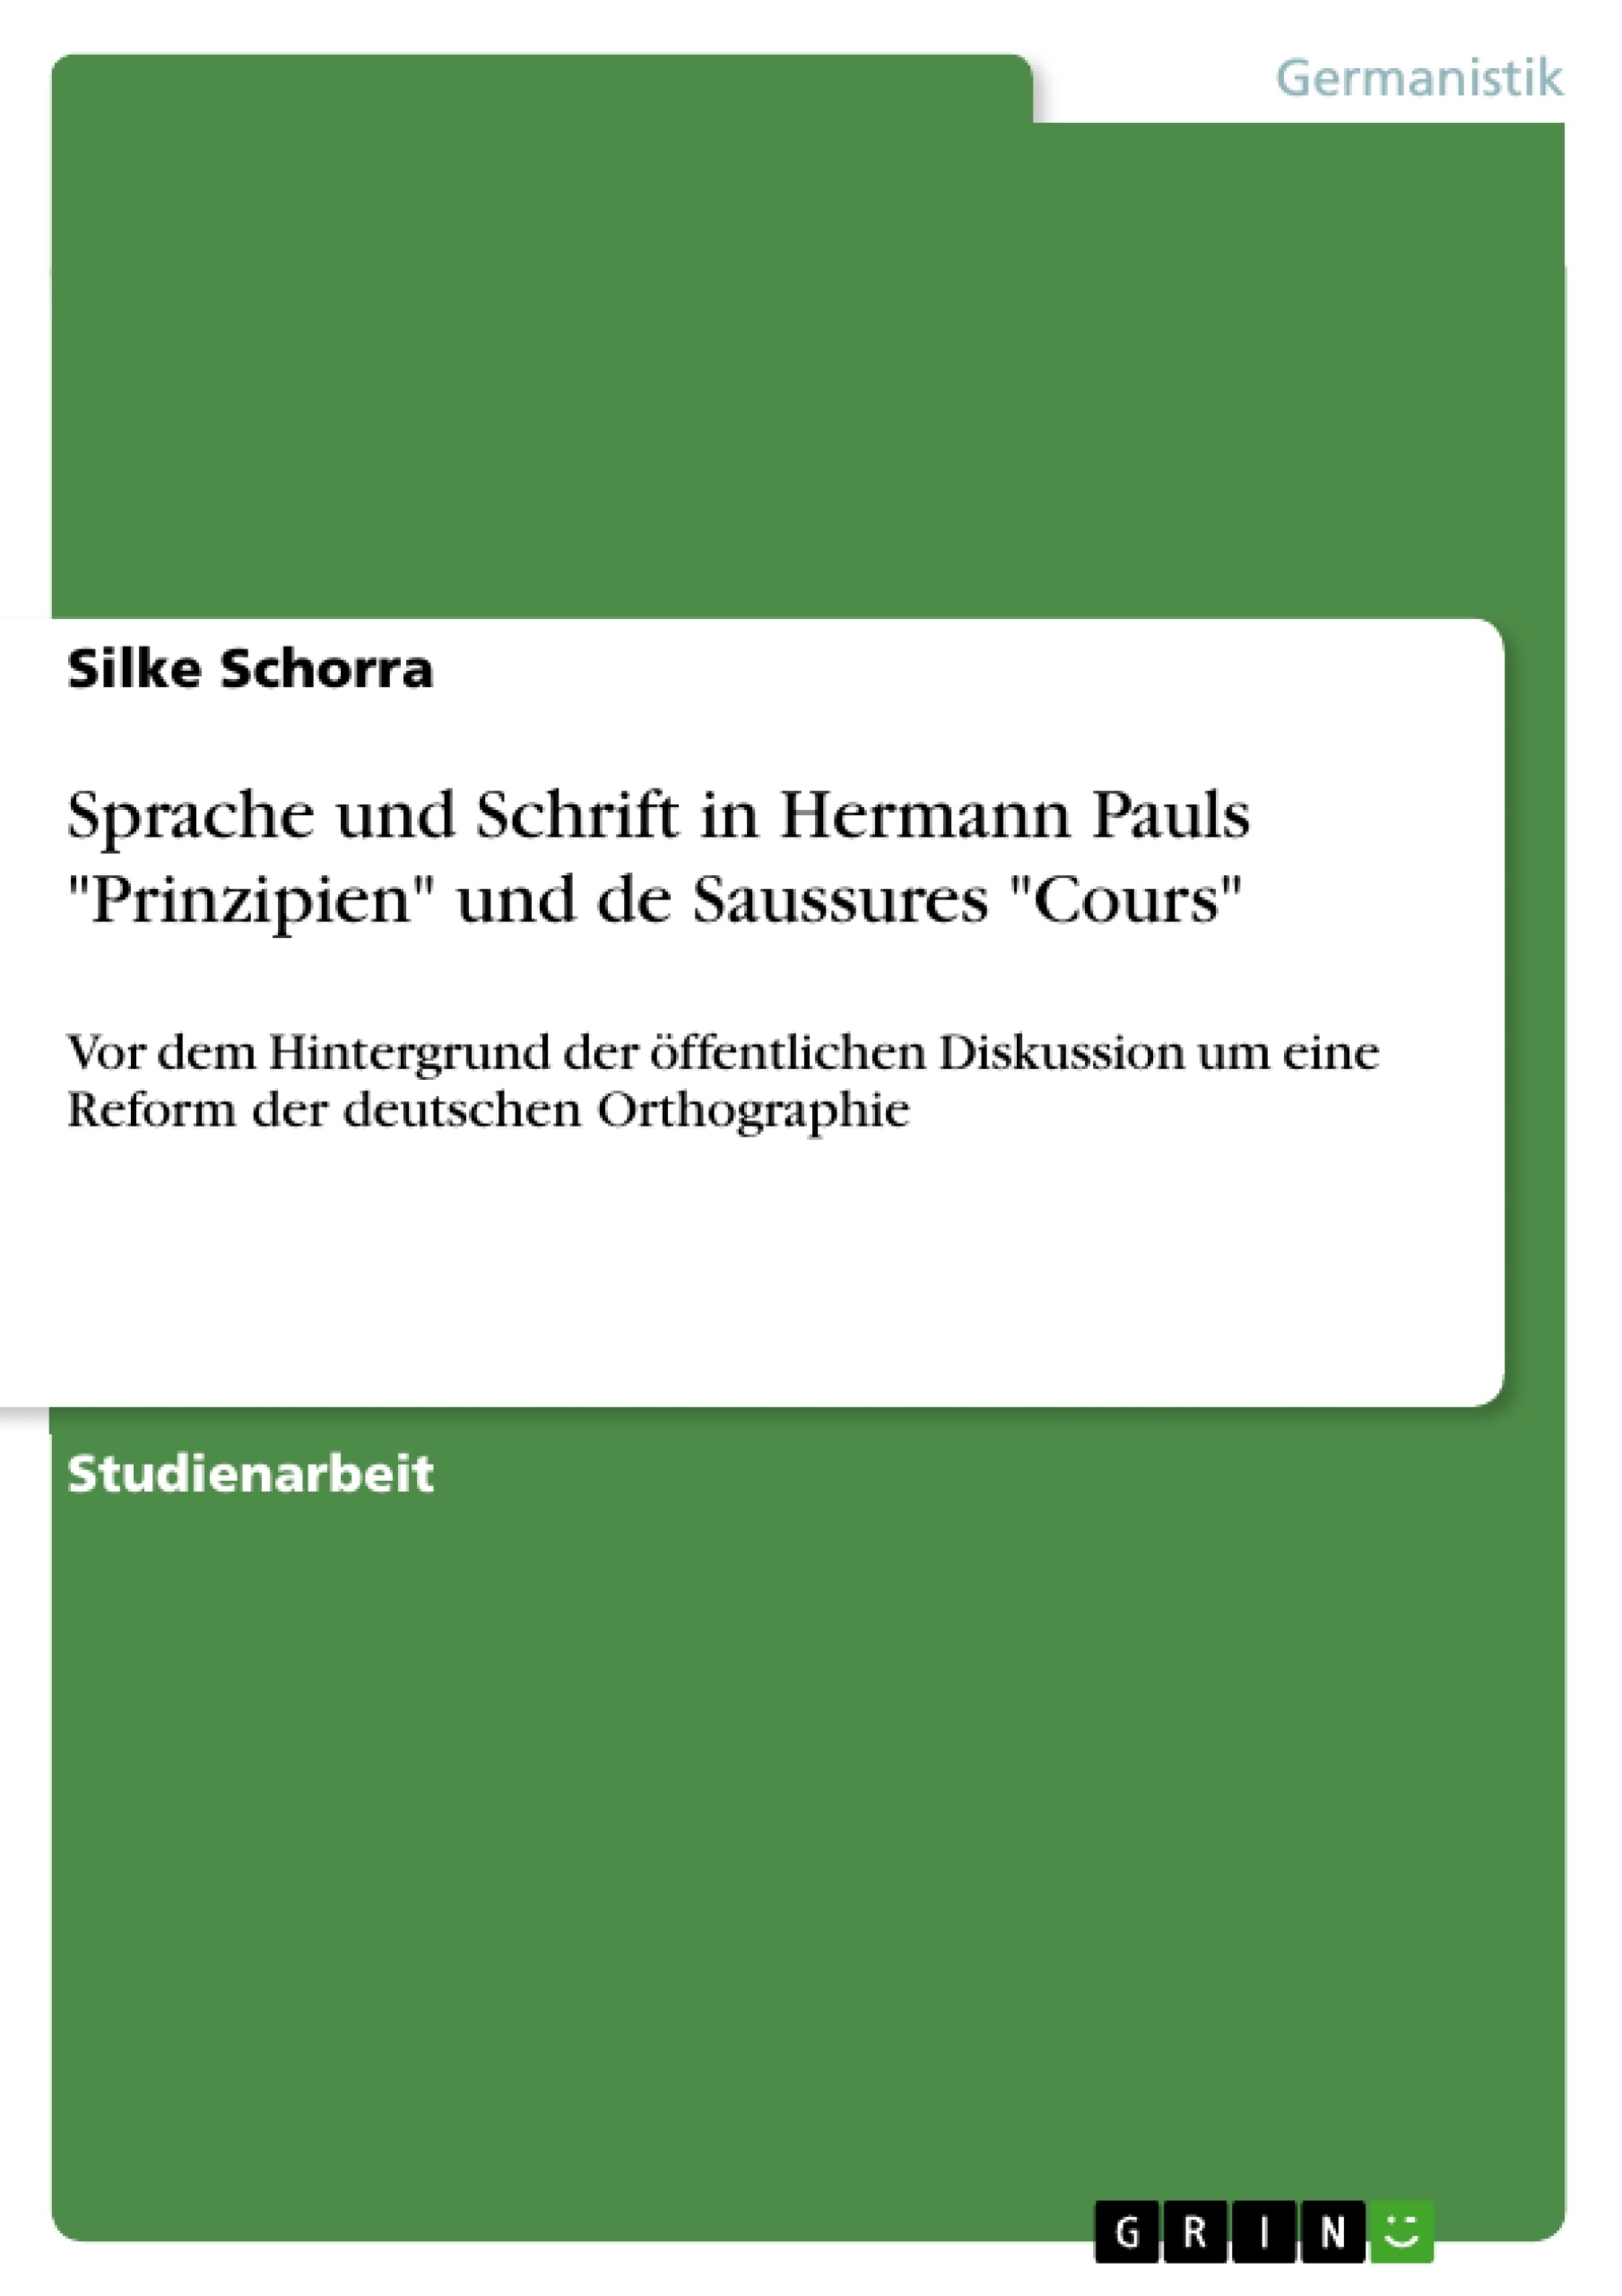 Titre: Sprache und Schrift in Hermann Pauls "Prinzipien" und de Saussures "Cours"